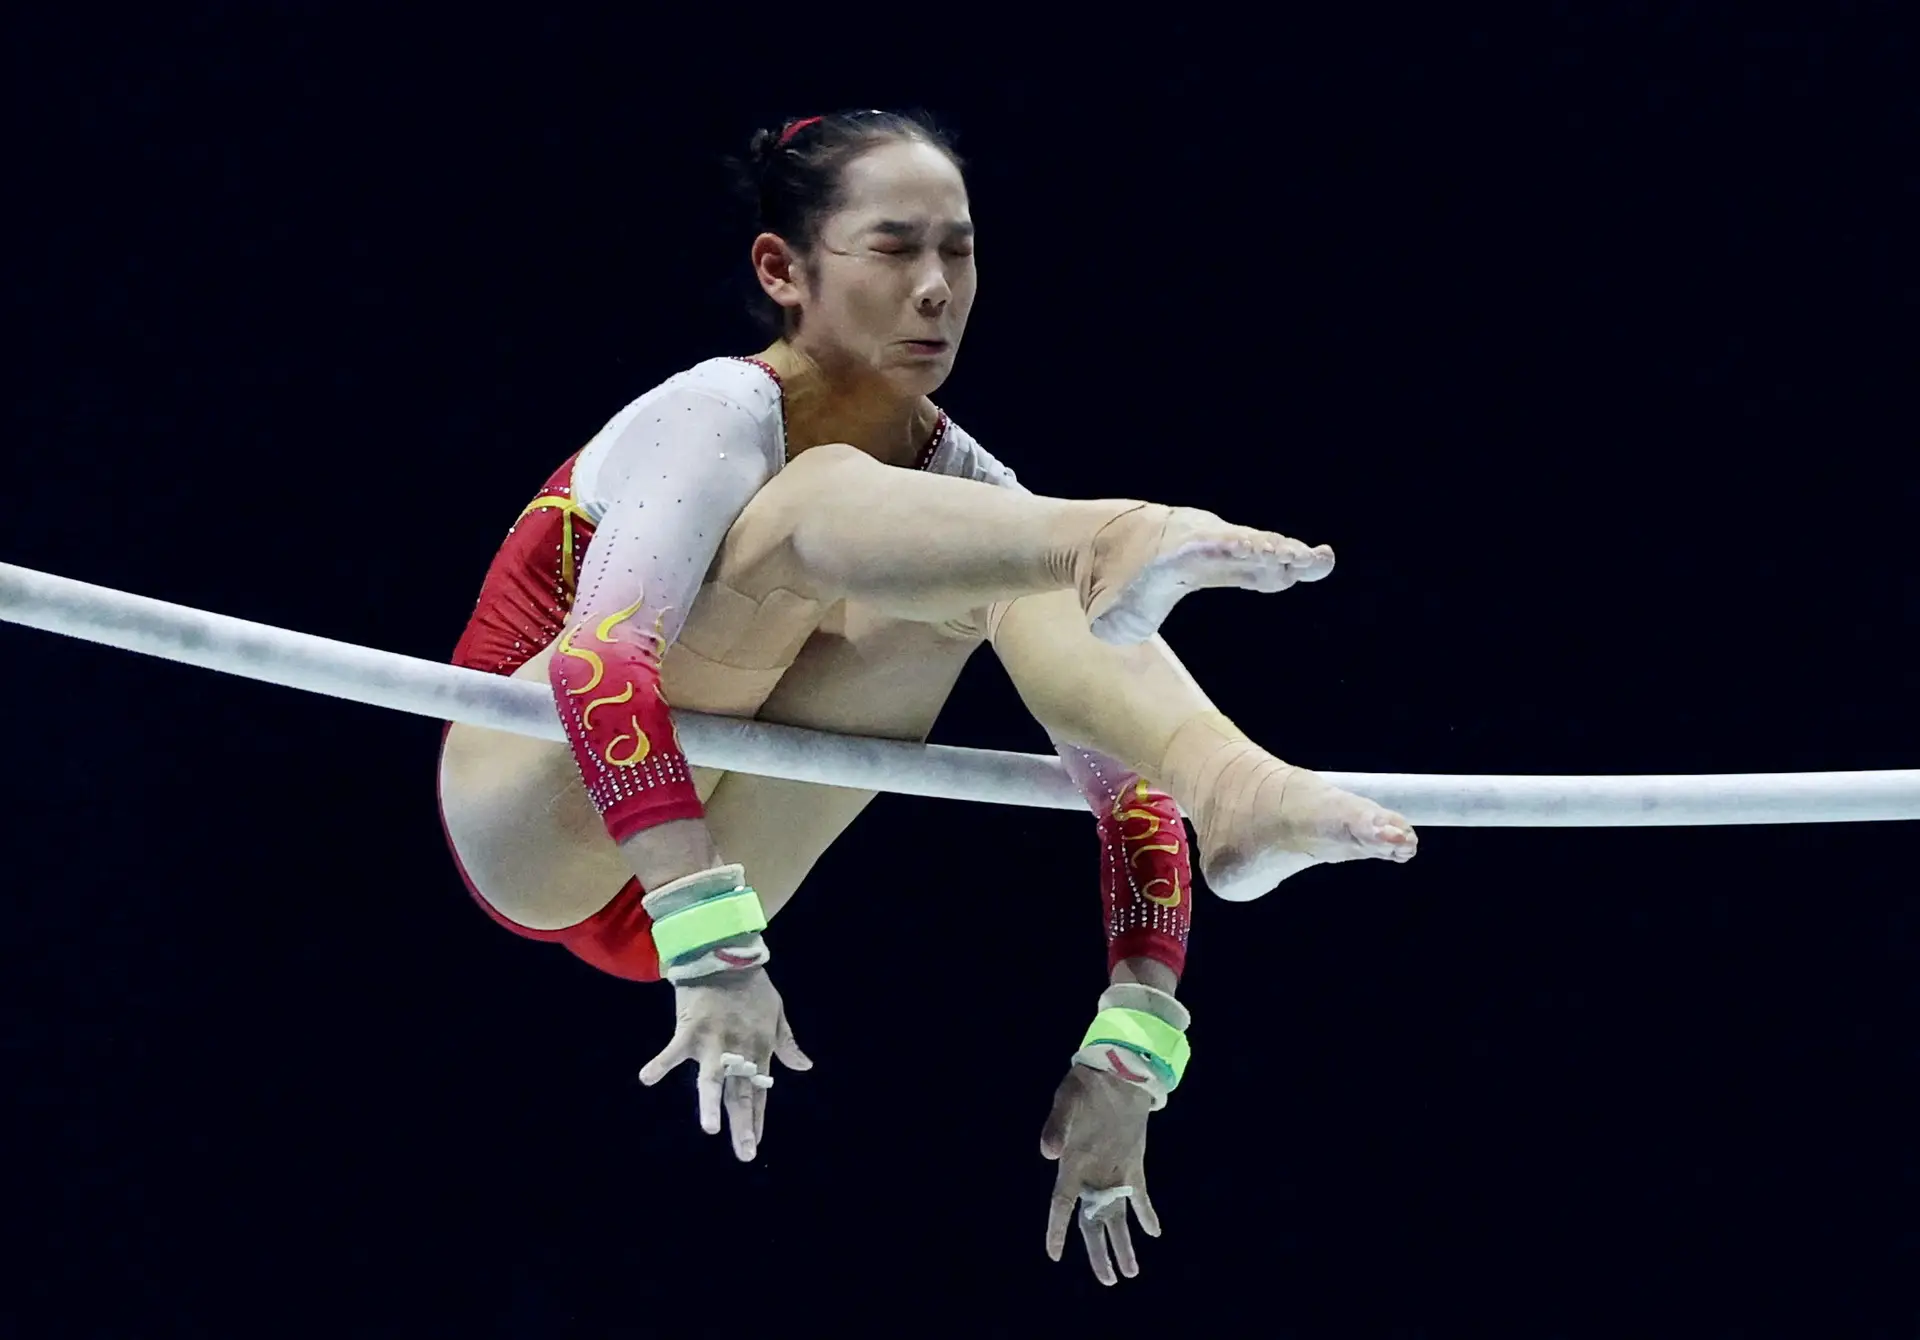 DISCIPLINA. Muitas horas de treino depois, esta chinesa não evita um esgar de dor, durante o Campeonato do Mundo de Ginástica, em Liverpool